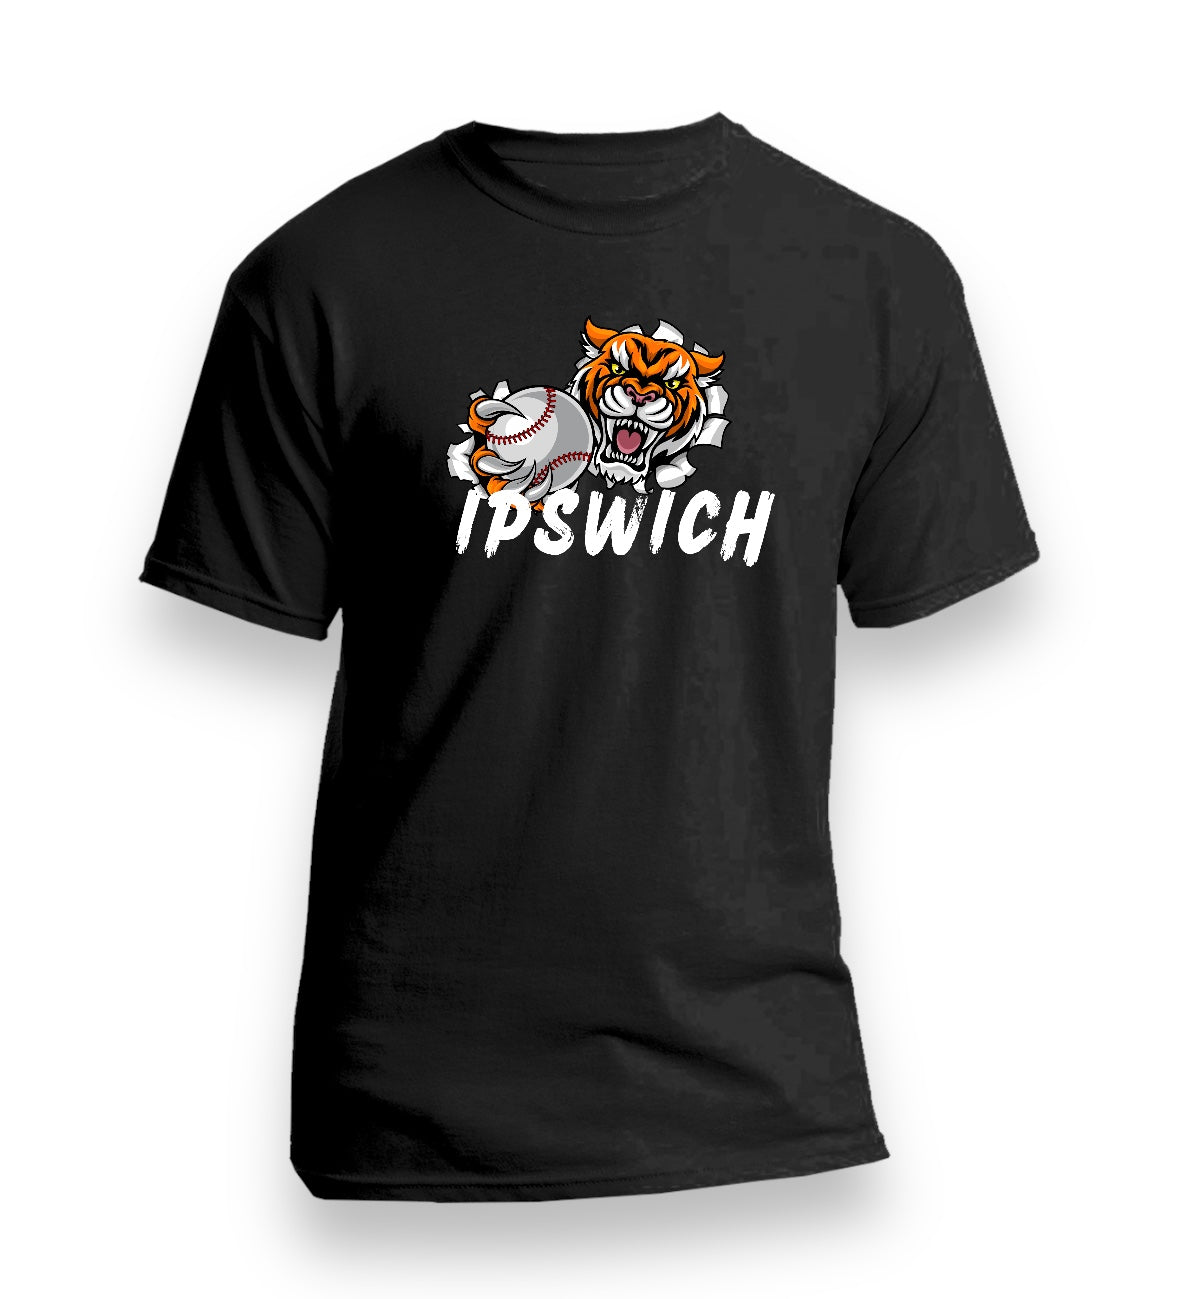 Ipswich Tiger Baseball T-shirts (Adults)